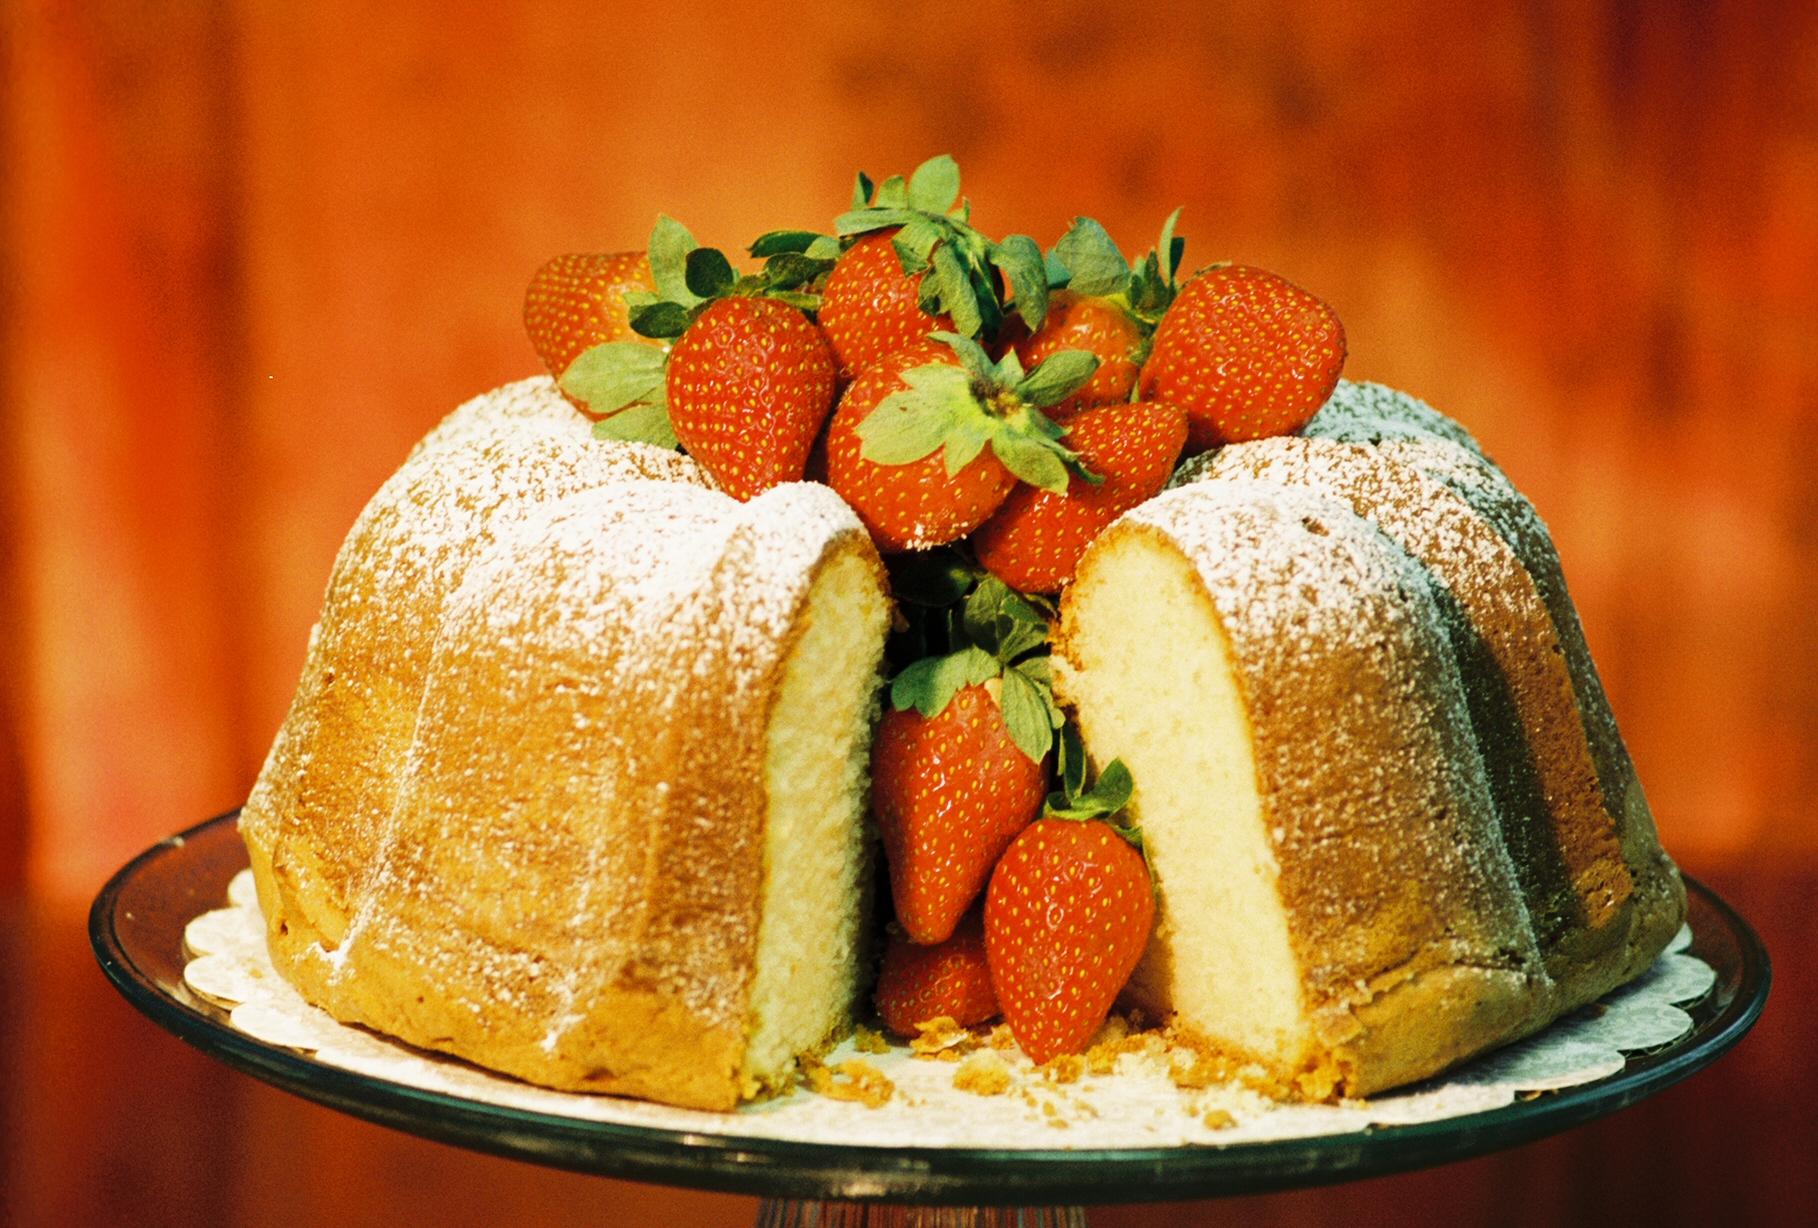 Lemon Cream Cheese Pound Cake garnished with fresh strawberries